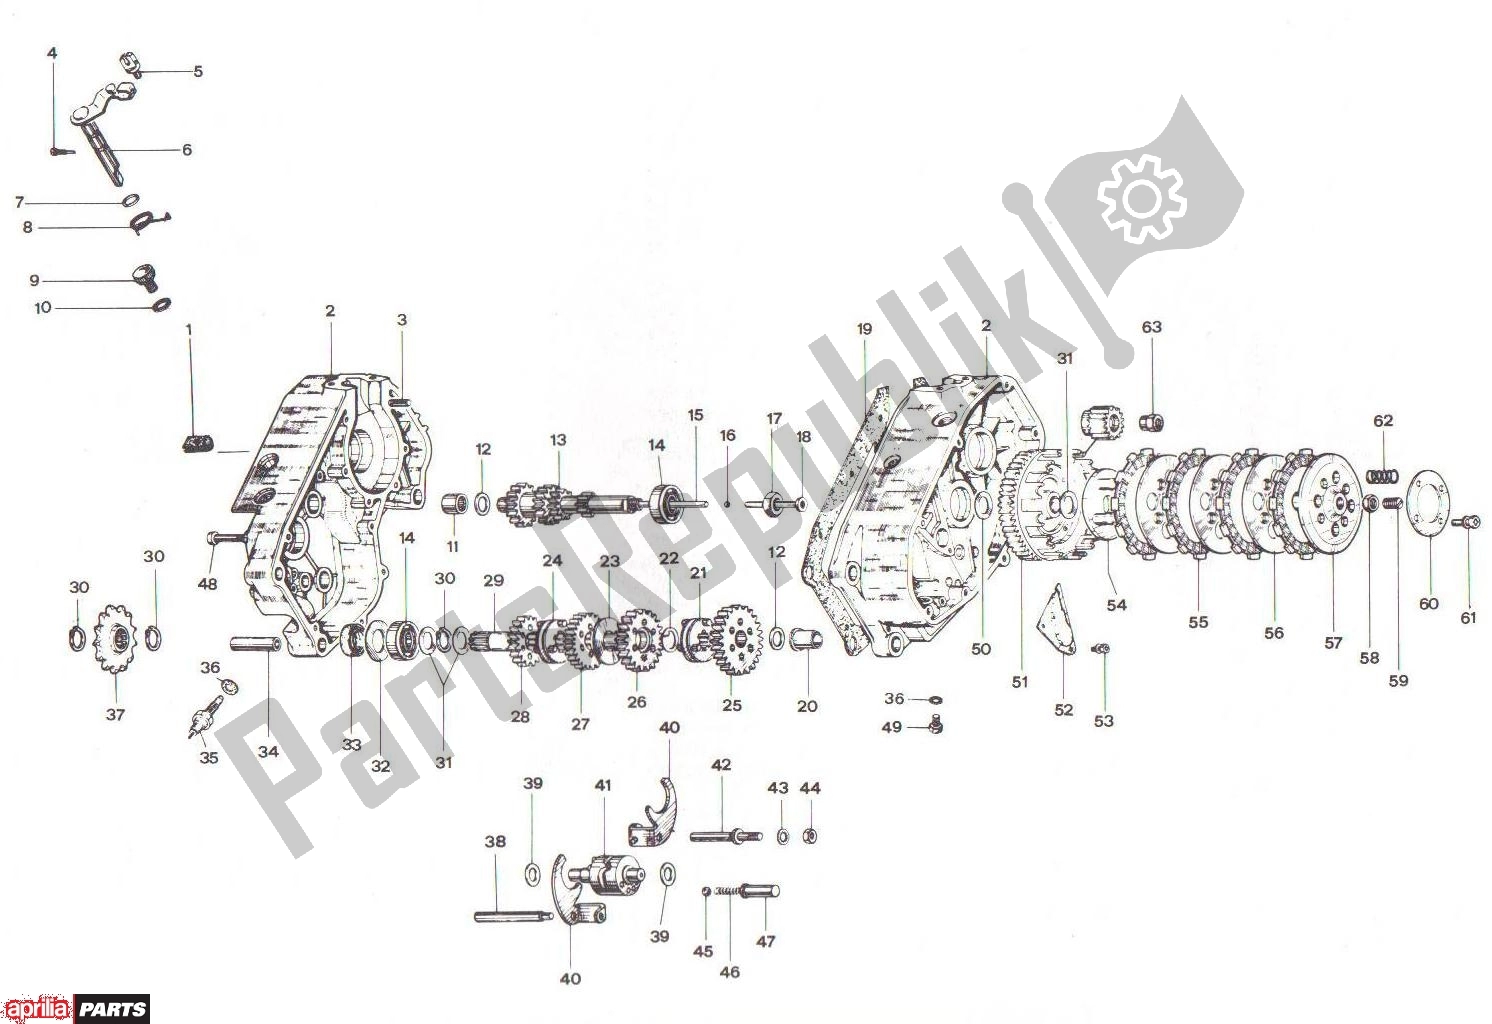 Toutes les pièces pour le Crankcase Clutch Transmission Basamento Frizione Cambio du Aprilia RV3/4 700 50 1986 - 1992